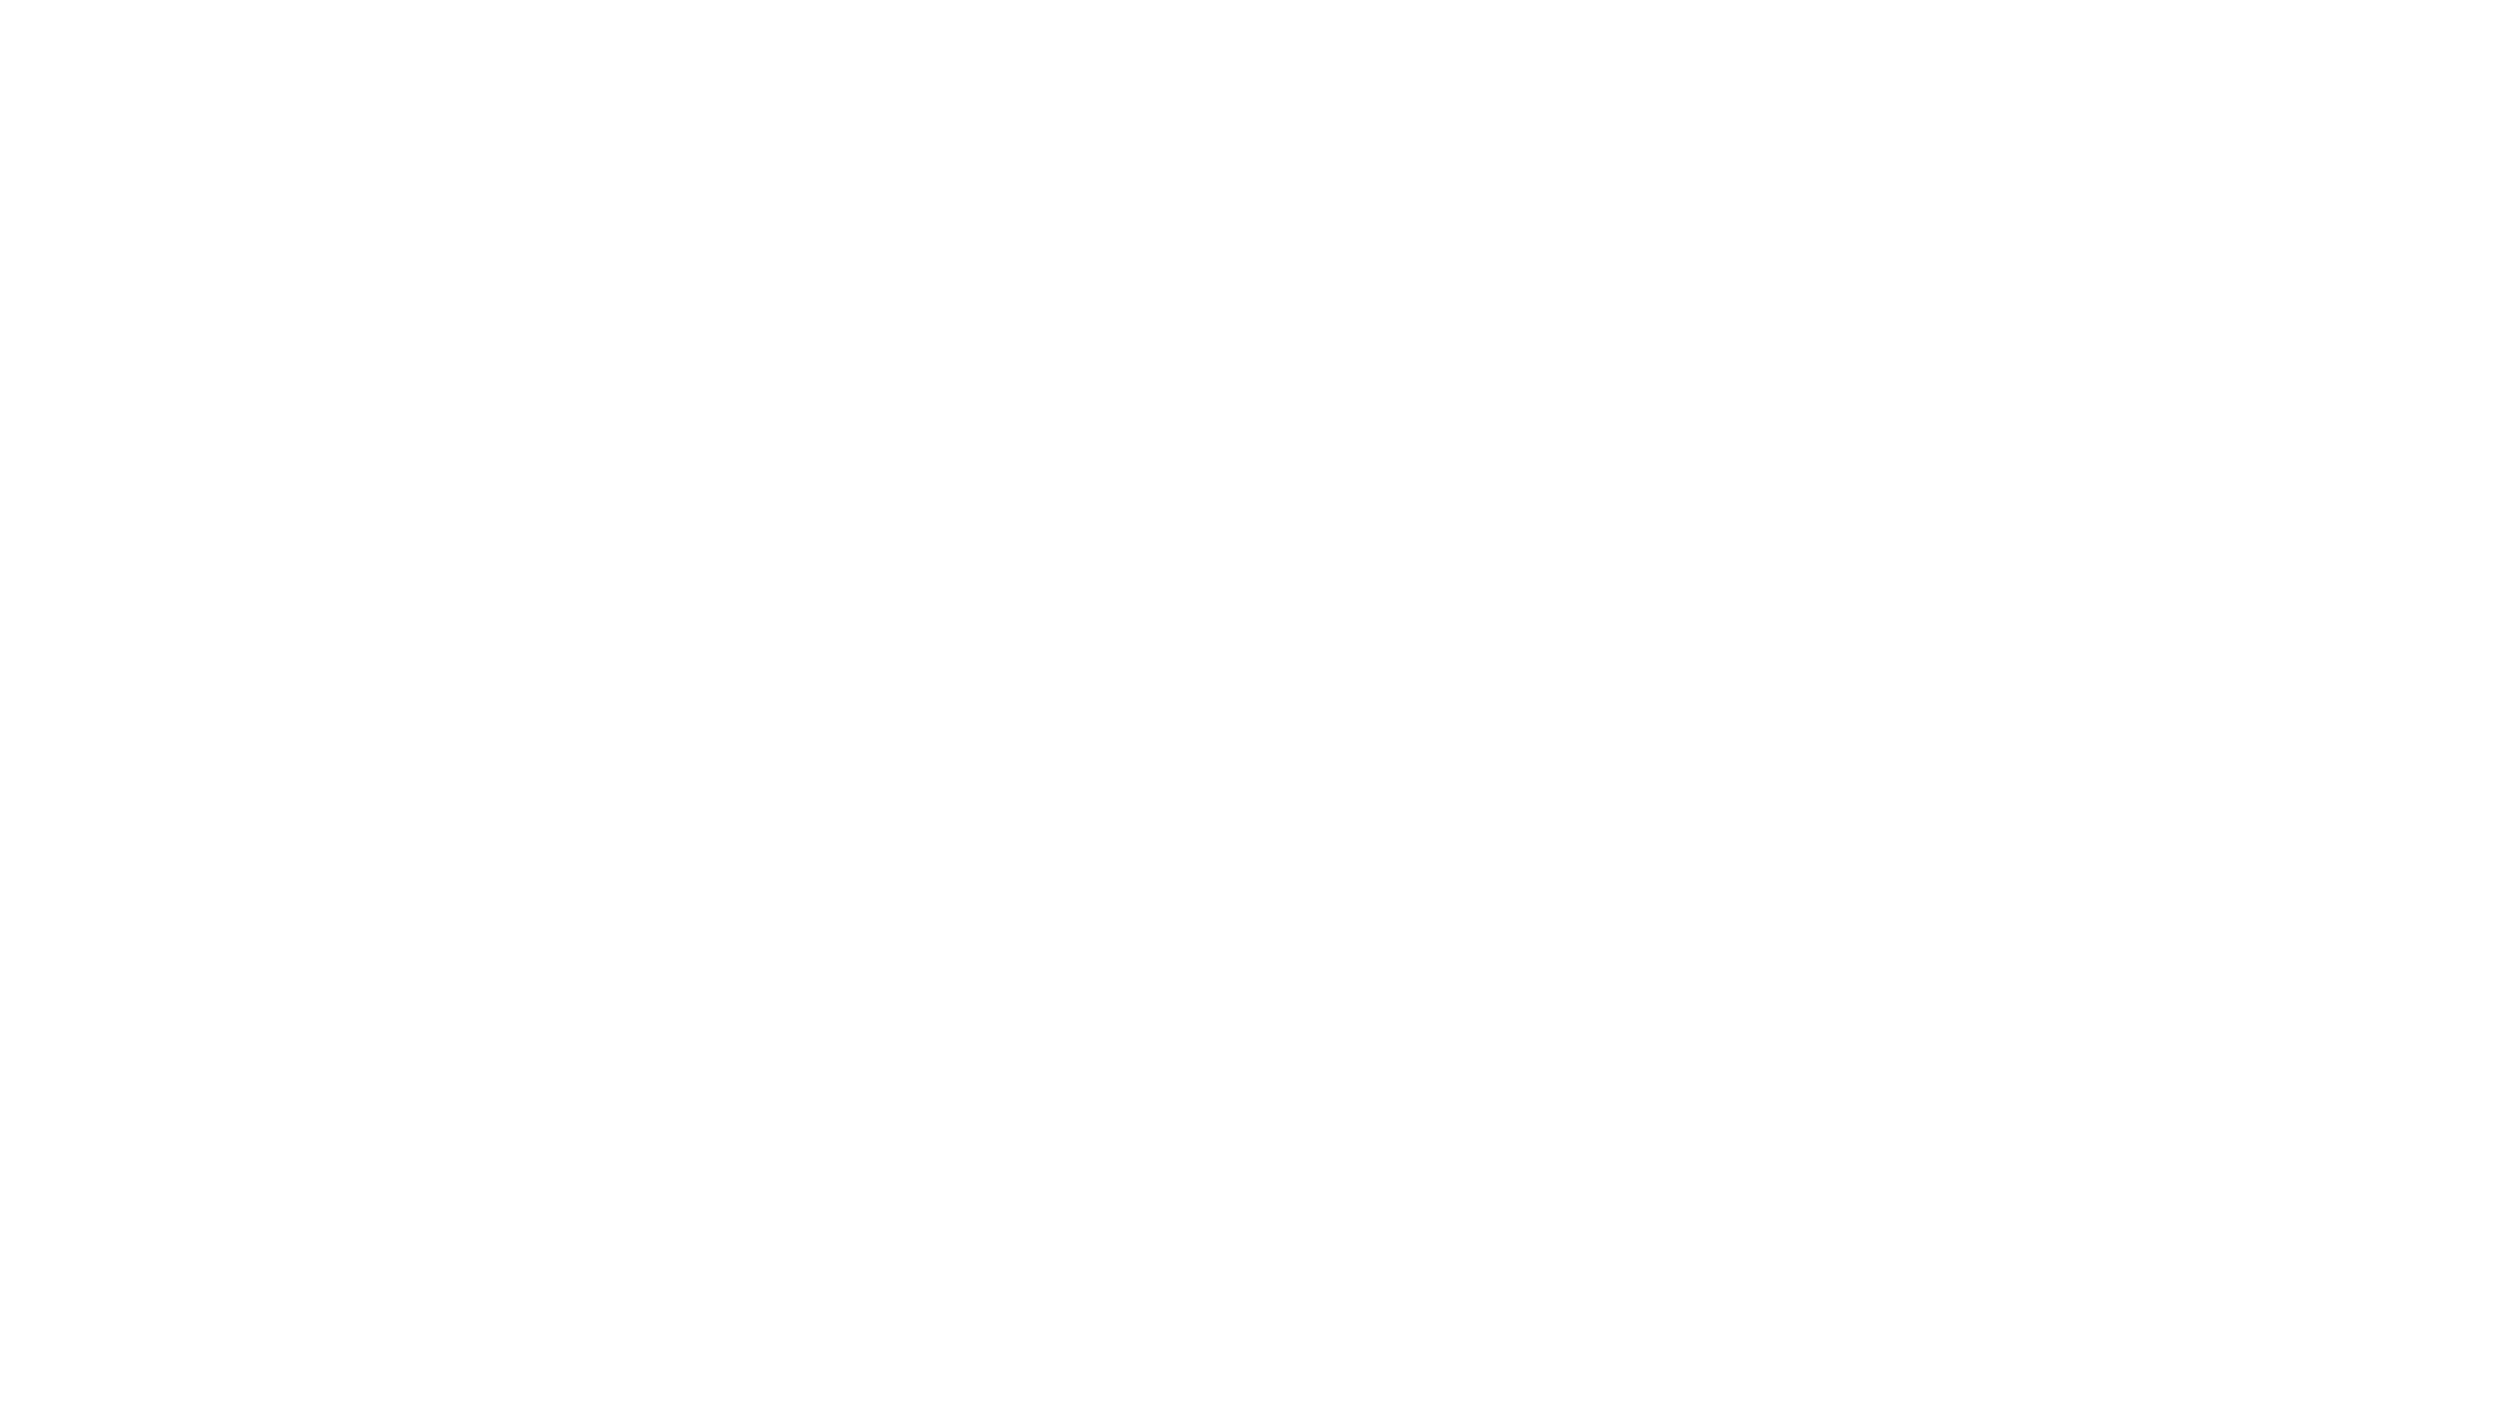 Johnny Palumbo